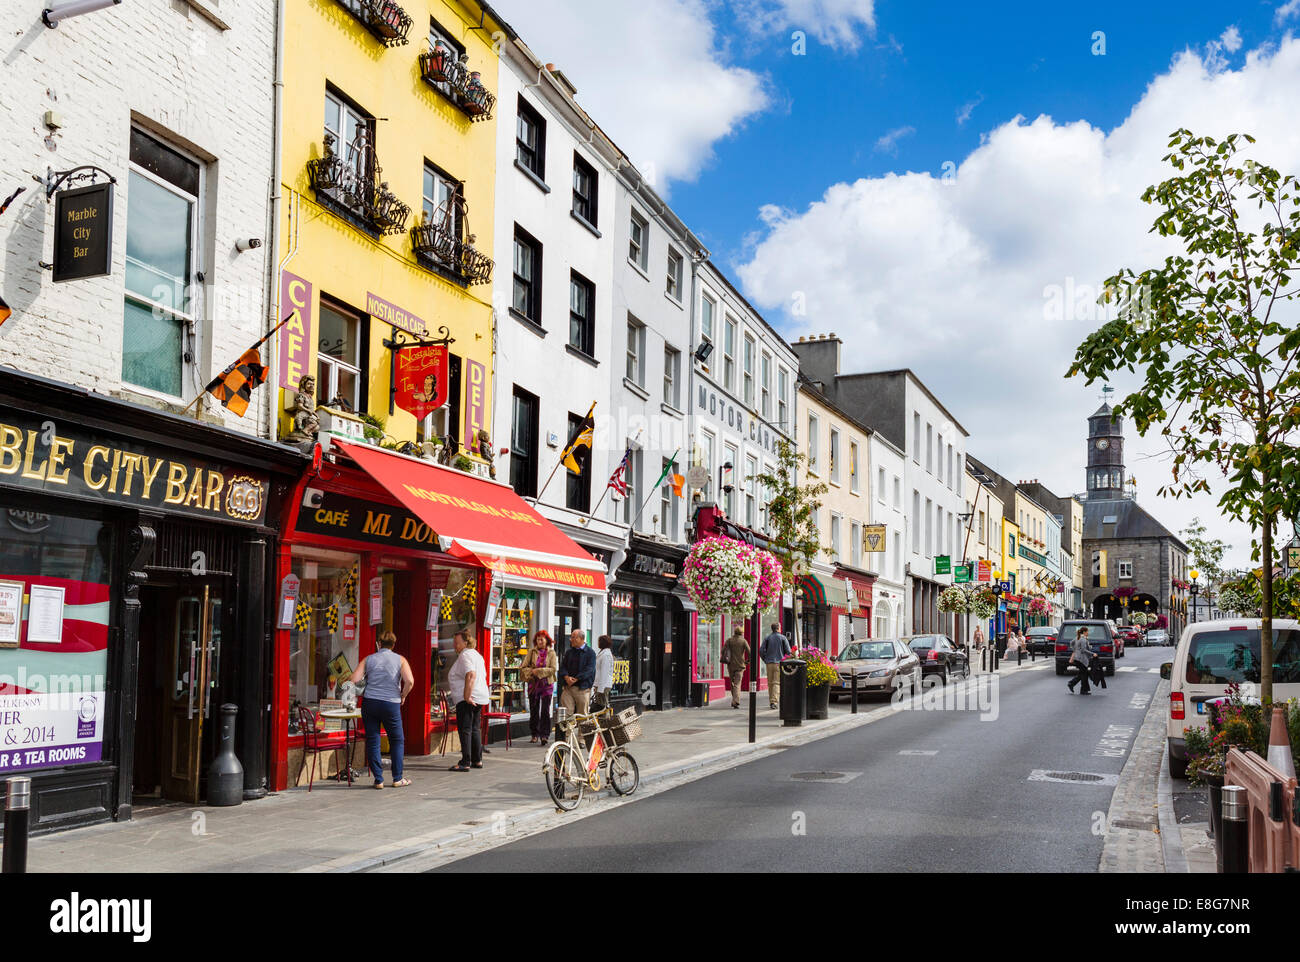 Boutiques sur la rue principale dans le centre-ville, la ville de Kilkenny, comté de Kilkenny, République d'Irlande Banque D'Images